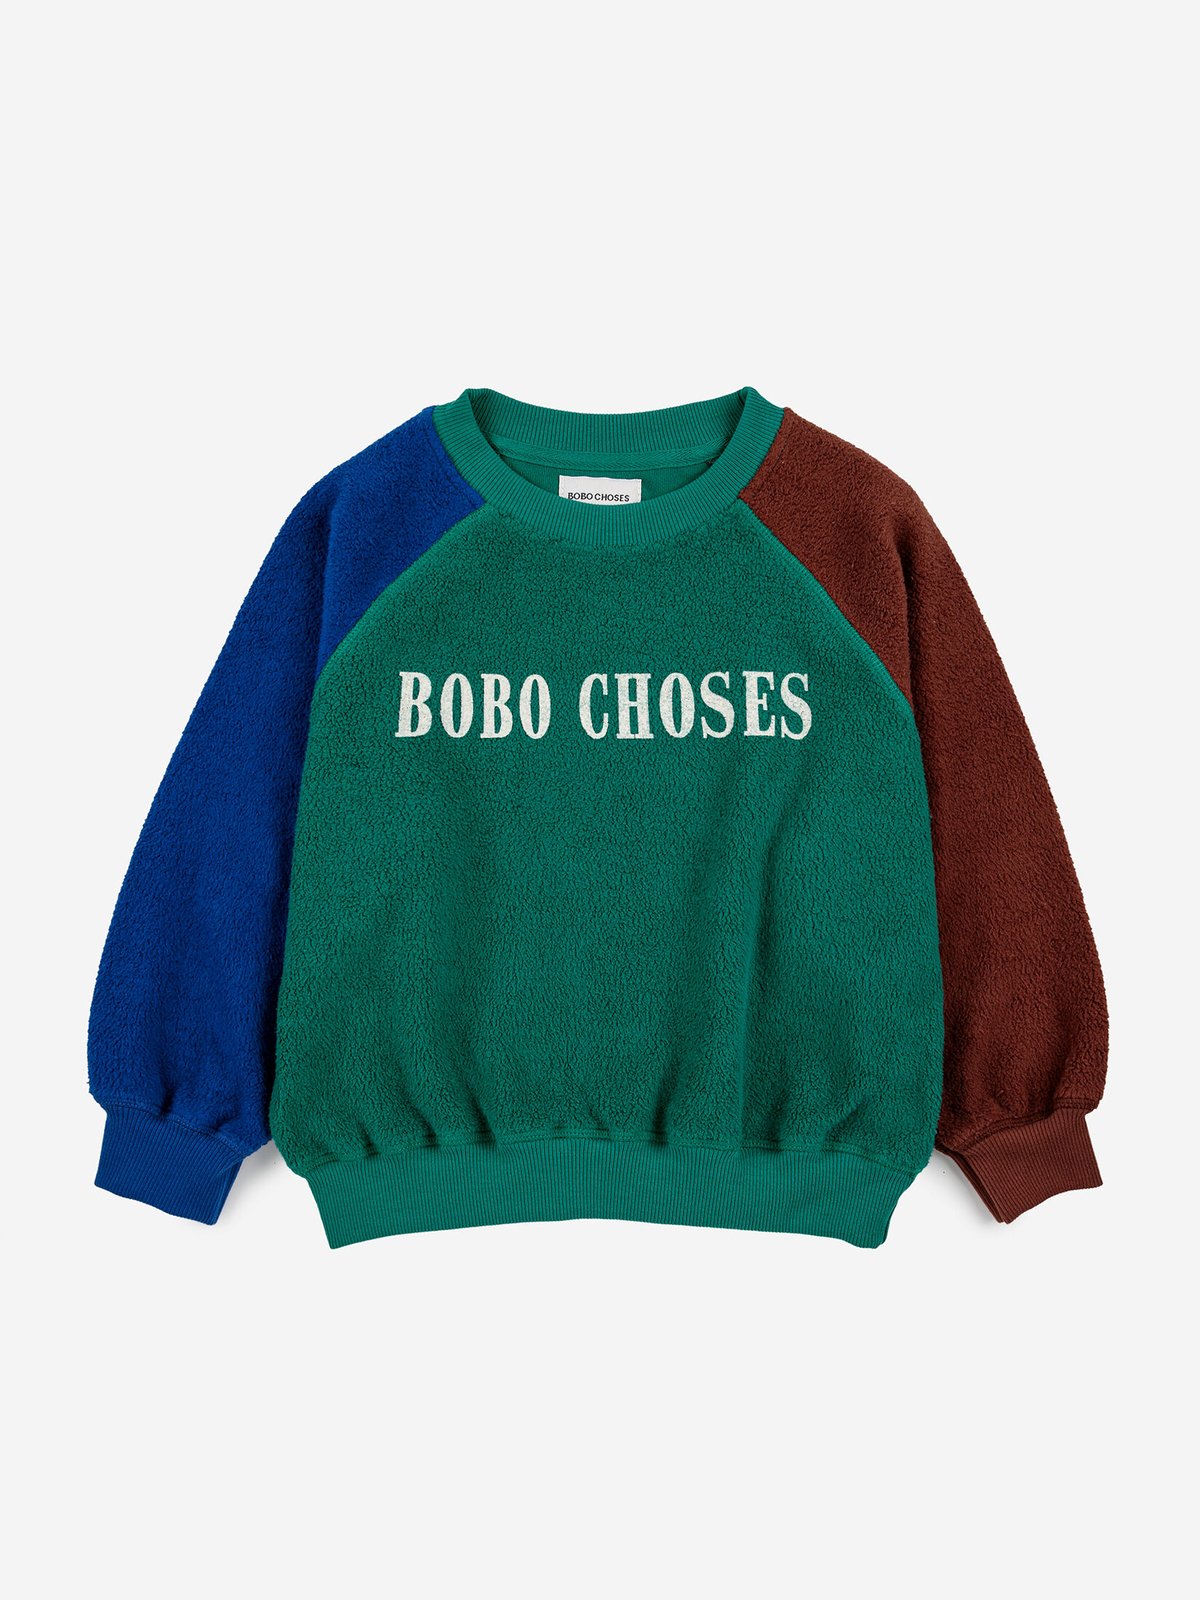 BOBO CHOSES セットアップサイズ6y-7y - Tシャツ/カットソー